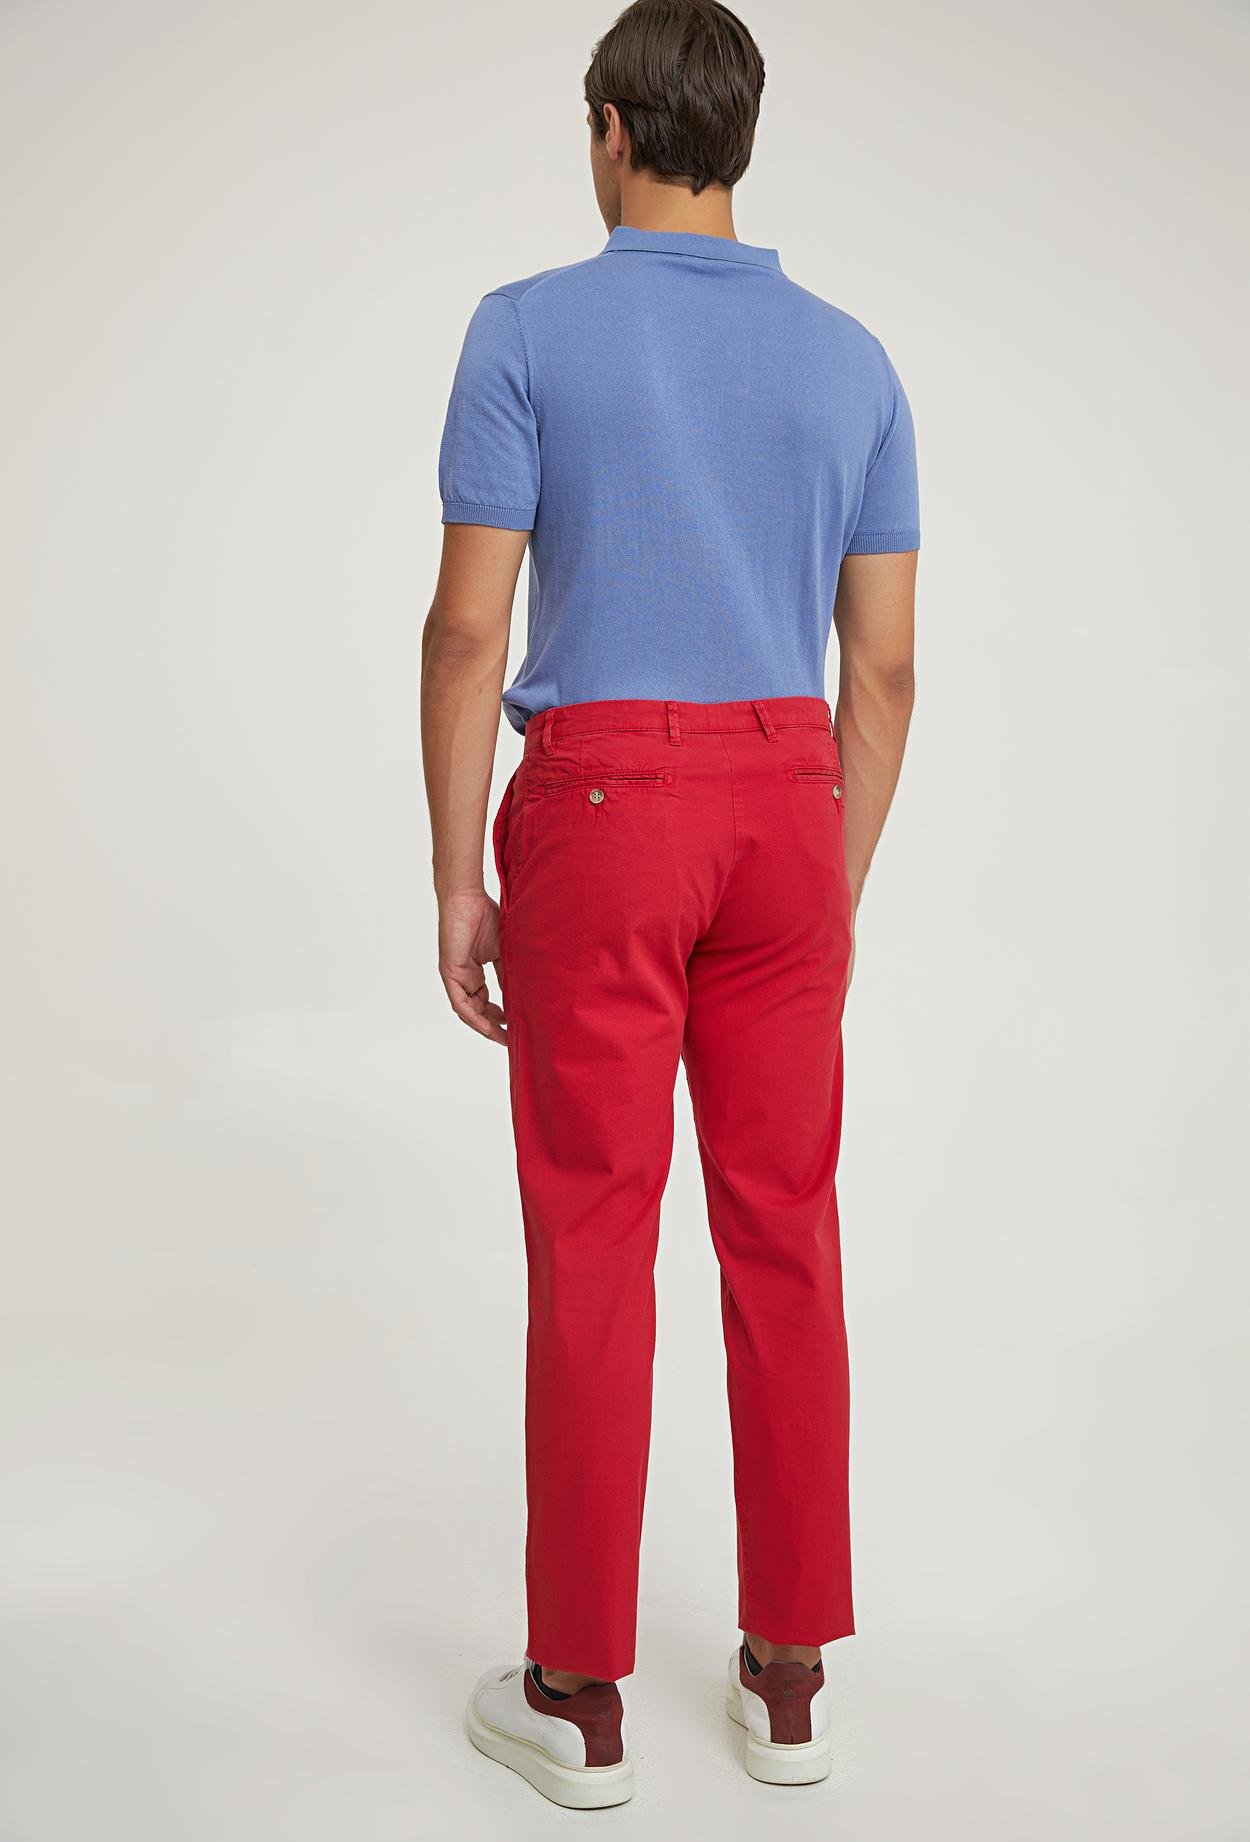 Ds Damat Slim Fit Kırmızı Düz Chino Pantolon